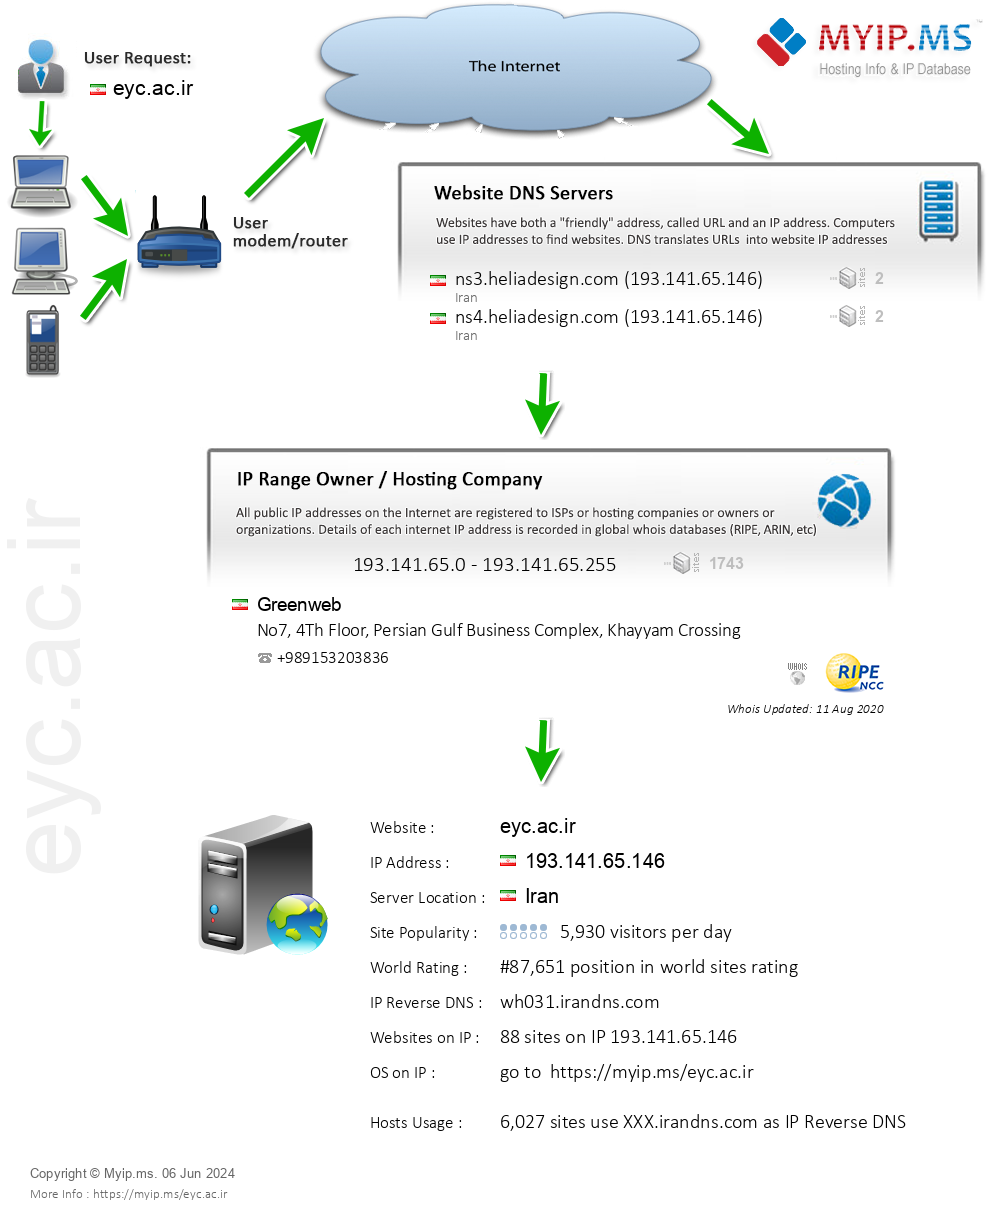 Eyc.ac.ir - Website Hosting Visual IP Diagram